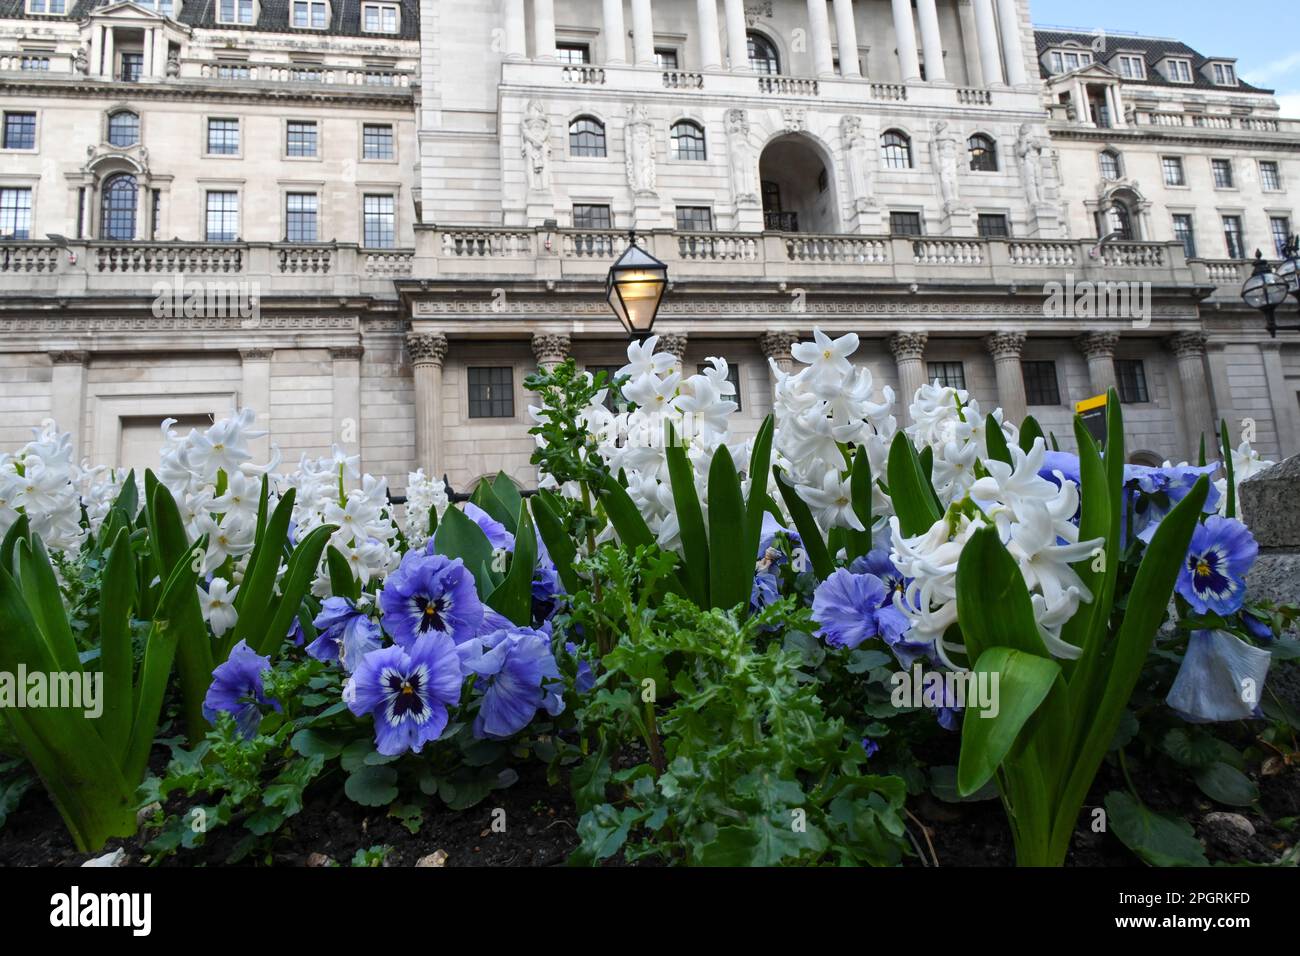 La Bank of England costruisce BoE, Threadneedle Street, Londra, la facciata anteriore del Regno Unito con giacinti primaverili e pannelli in primo piano Foto Stock